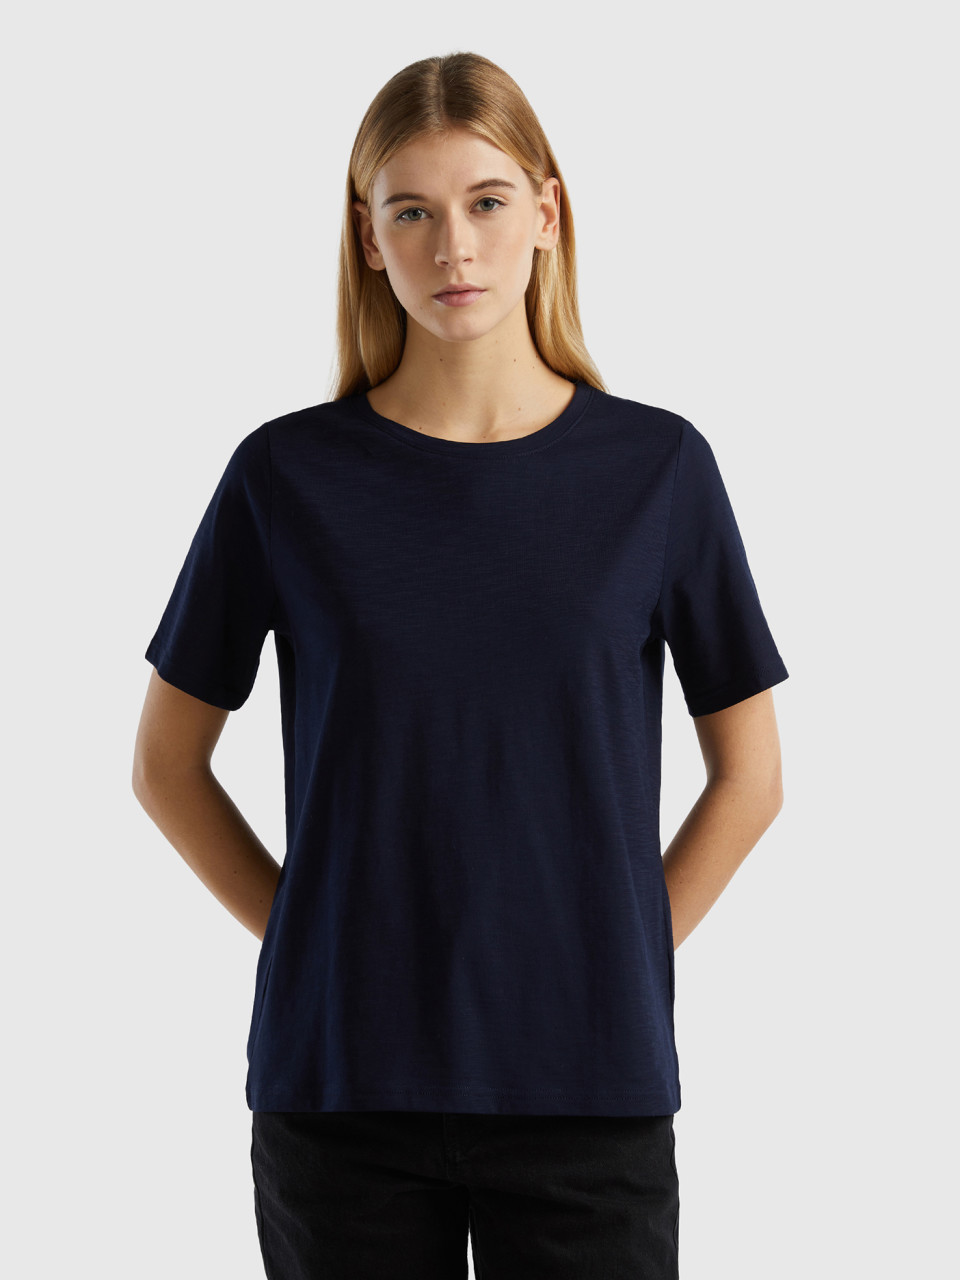 Benetton, Crew Neck T-shirt In Slub Cotton, Dark Blue, Women